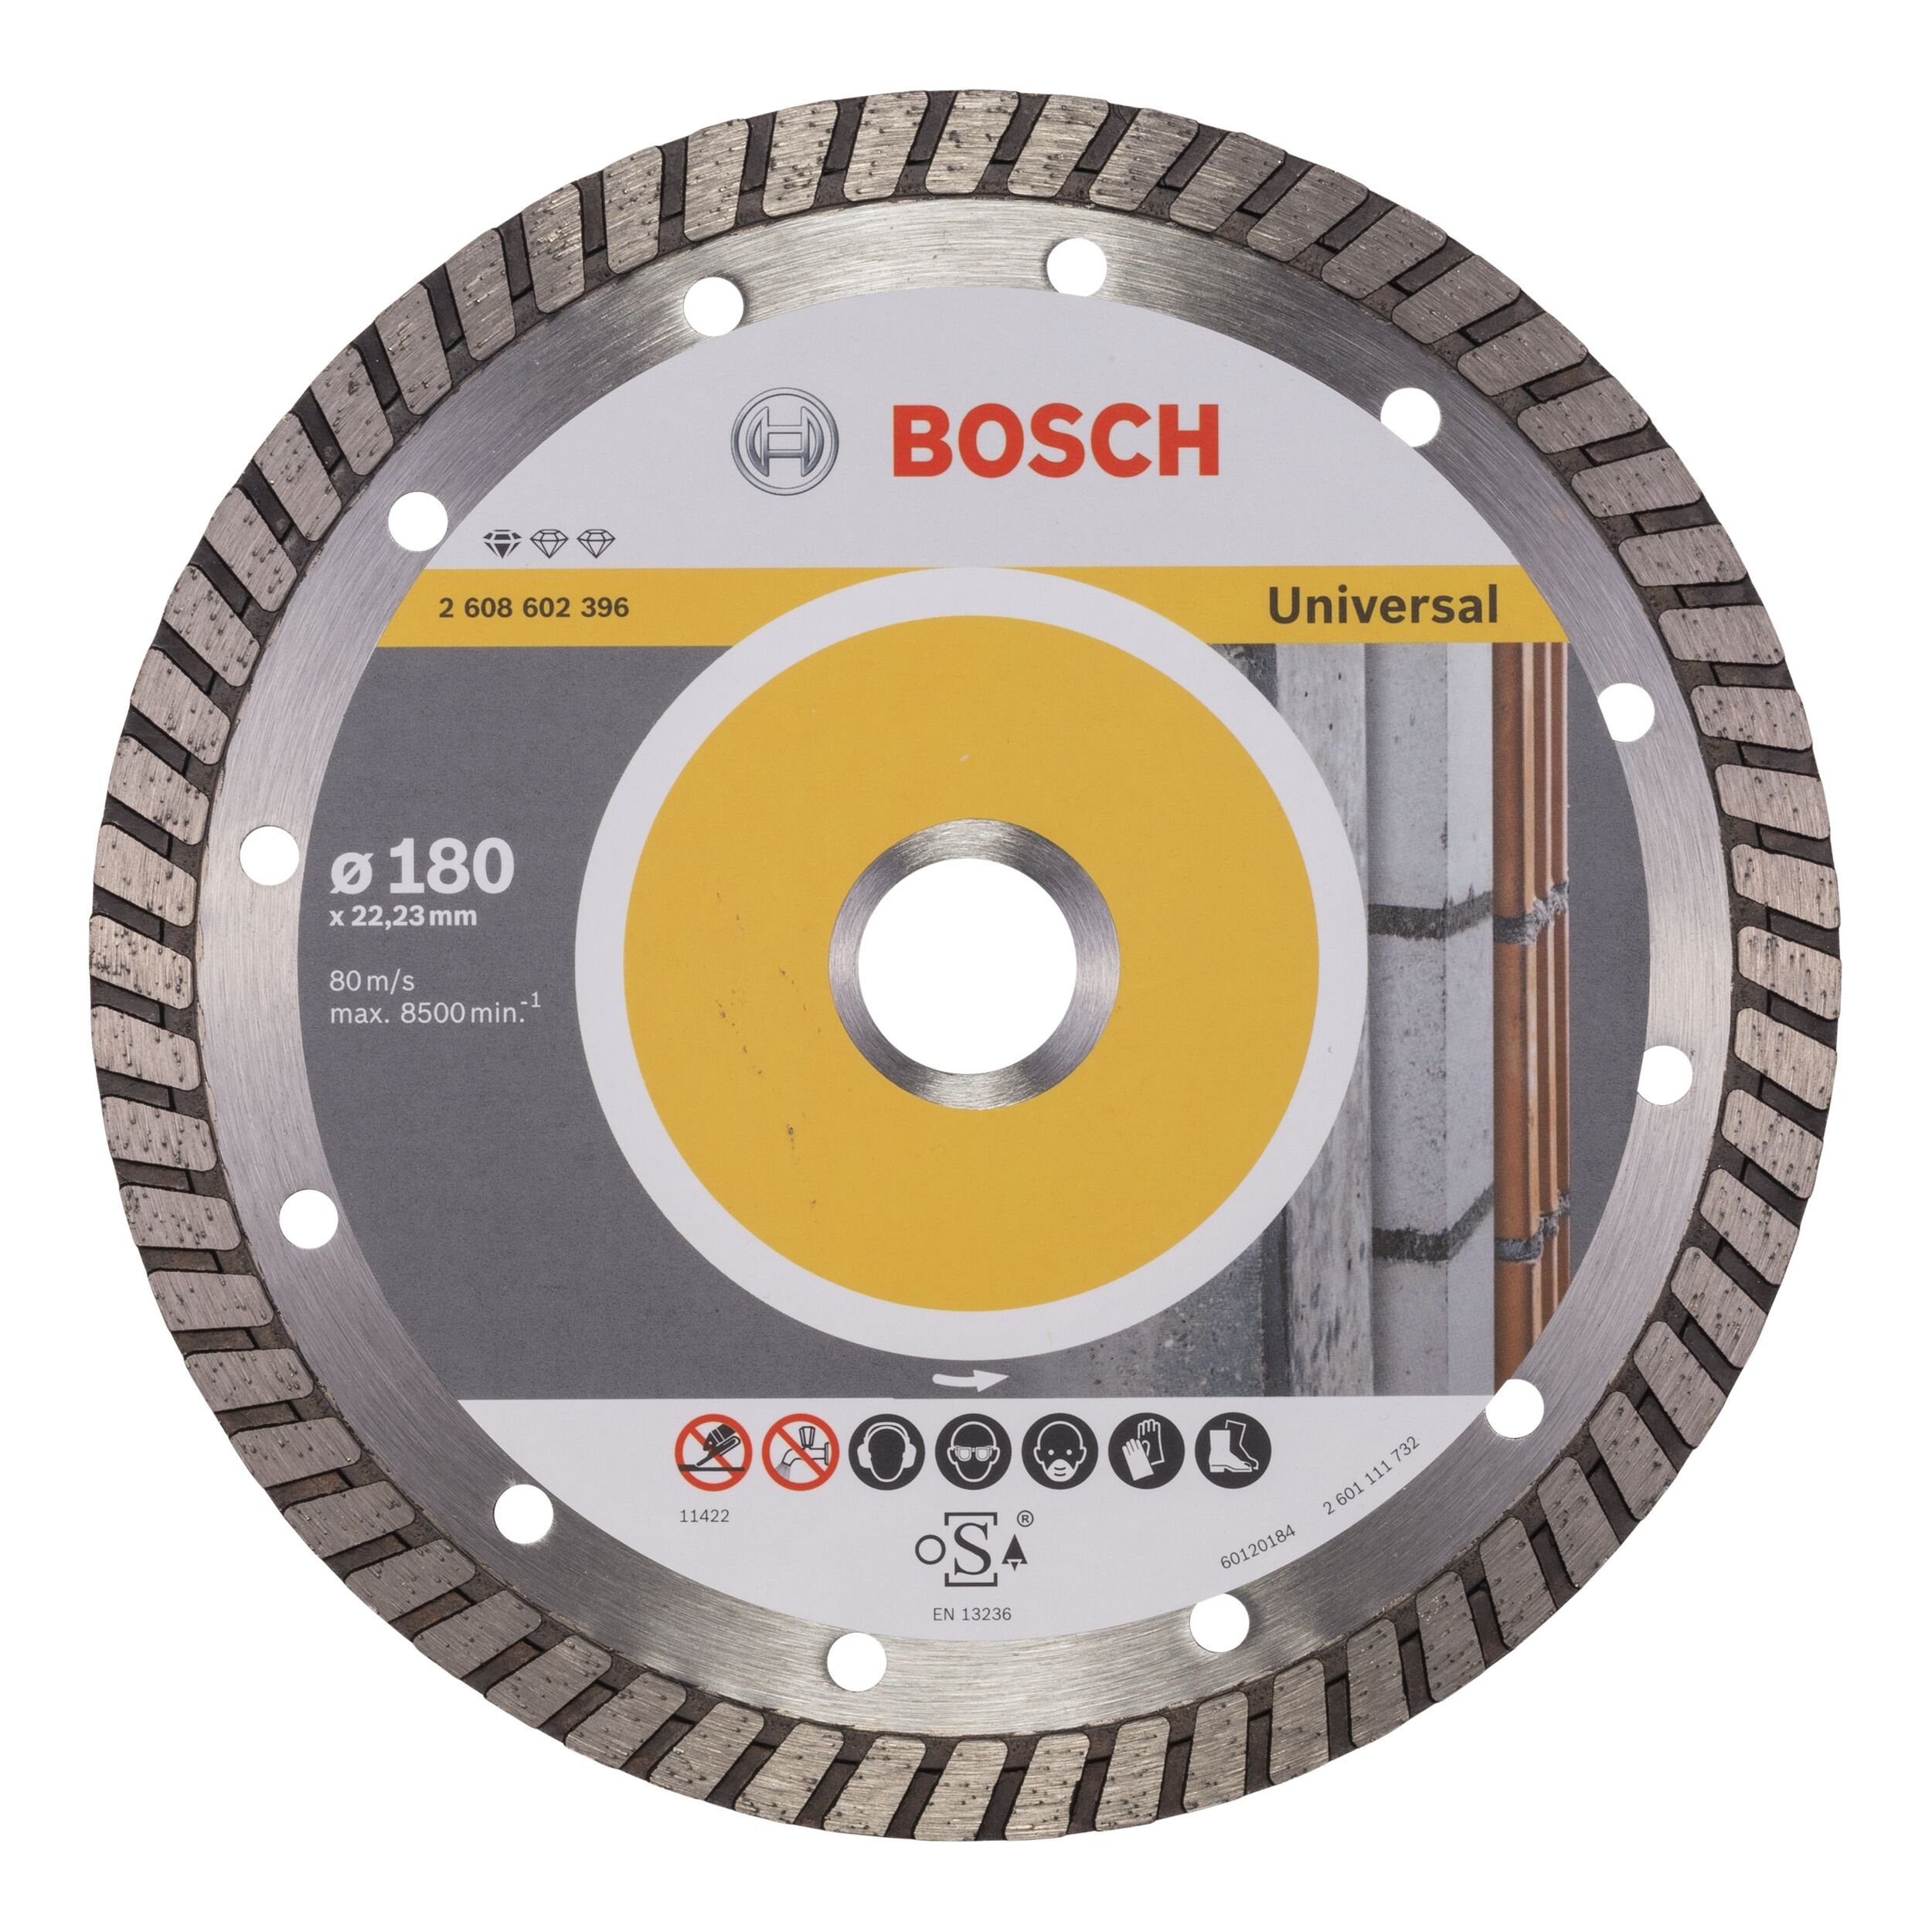 BOSCH Trennscheibe, Ø 180 mm, Standard for Universal Turbo Diamanttrennscheibe - 180 x 22,23 x 2